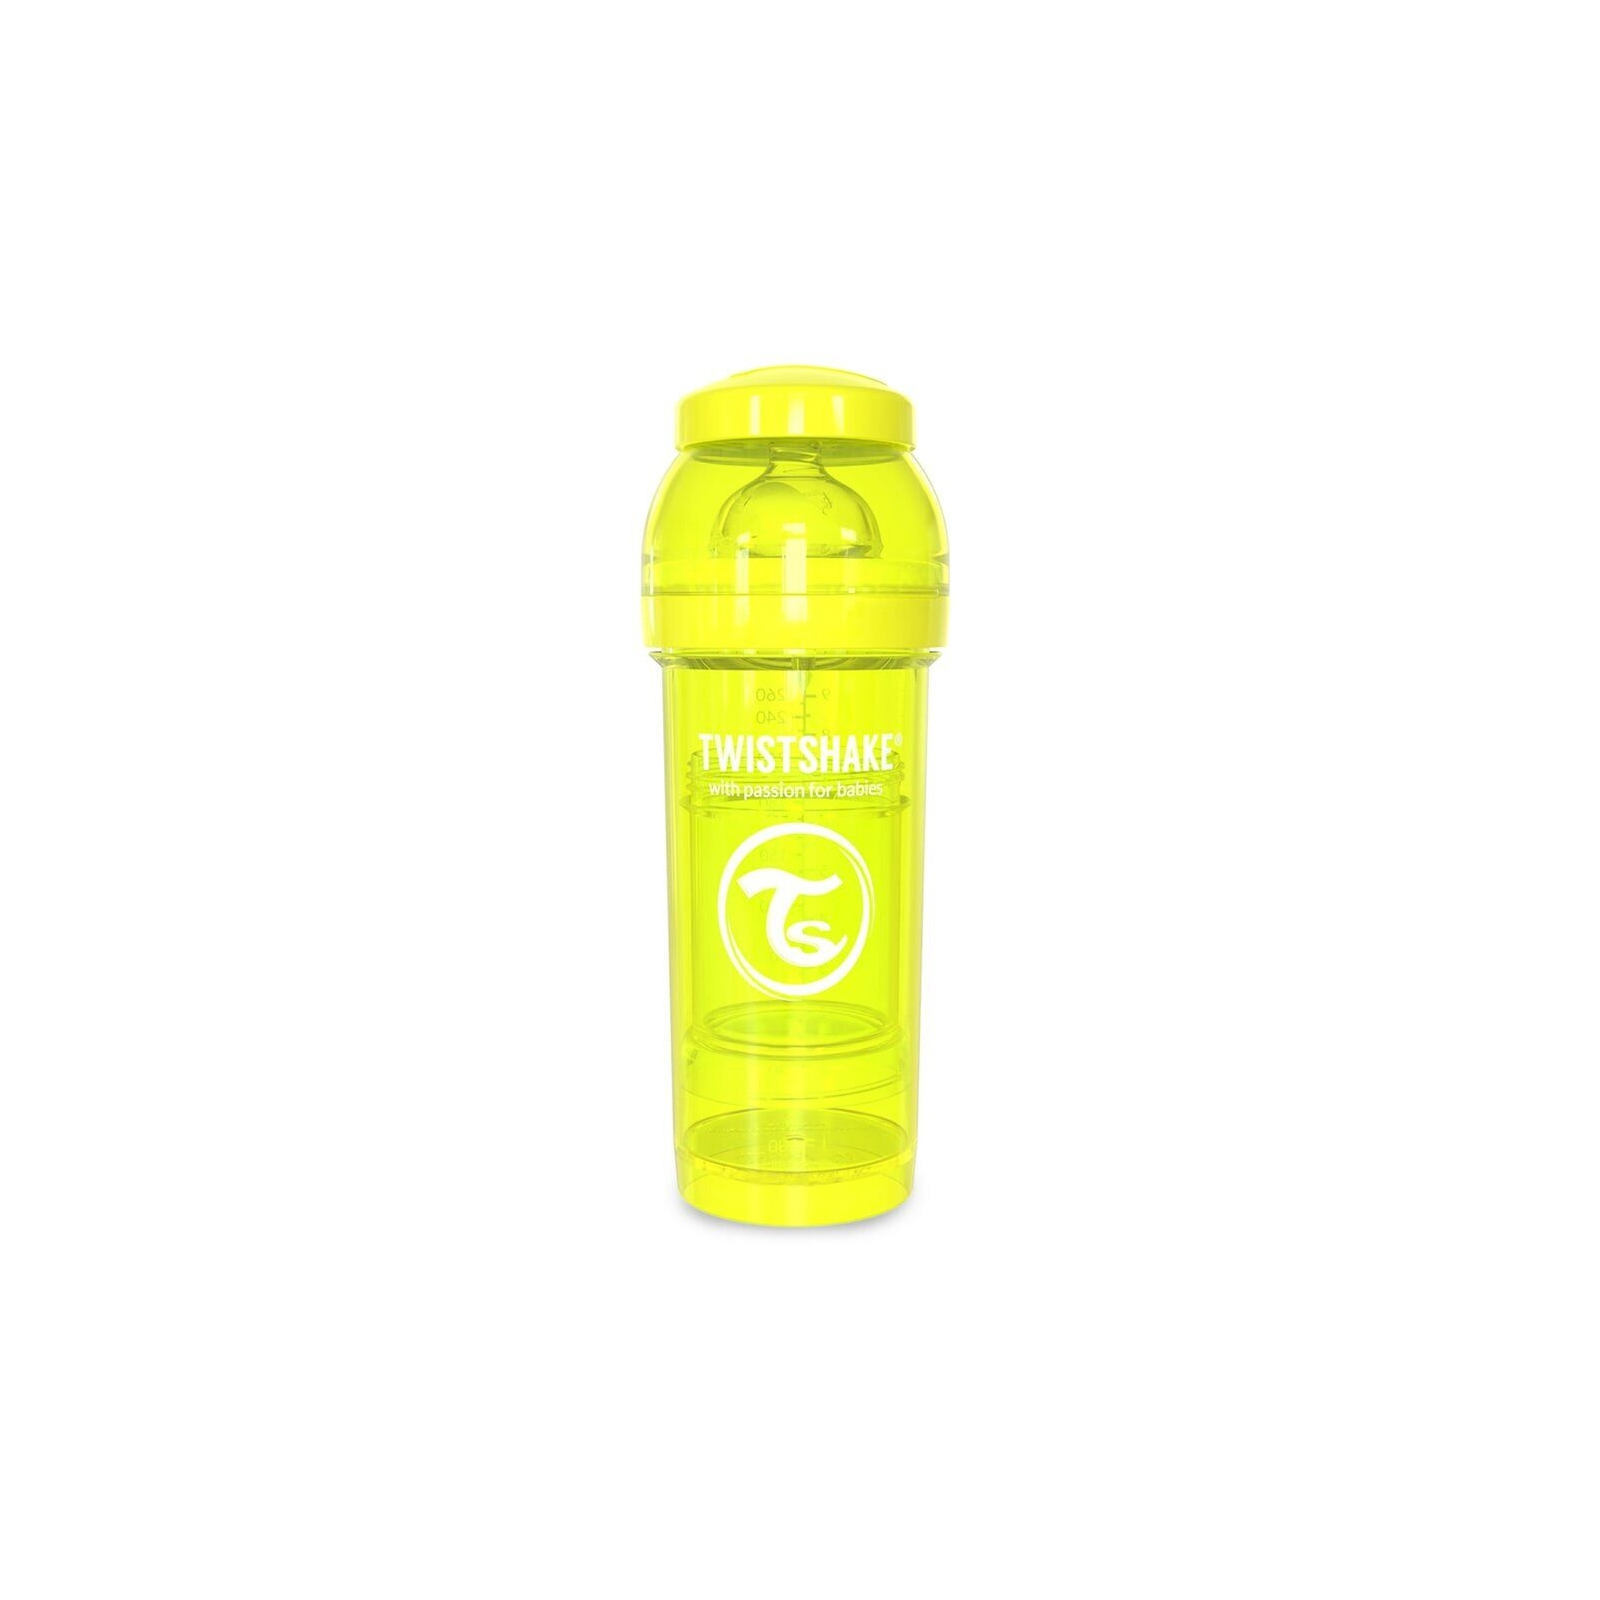 Бутылочка для кормления Twistshake антиколиковая 260 мл, зеленая (24855)